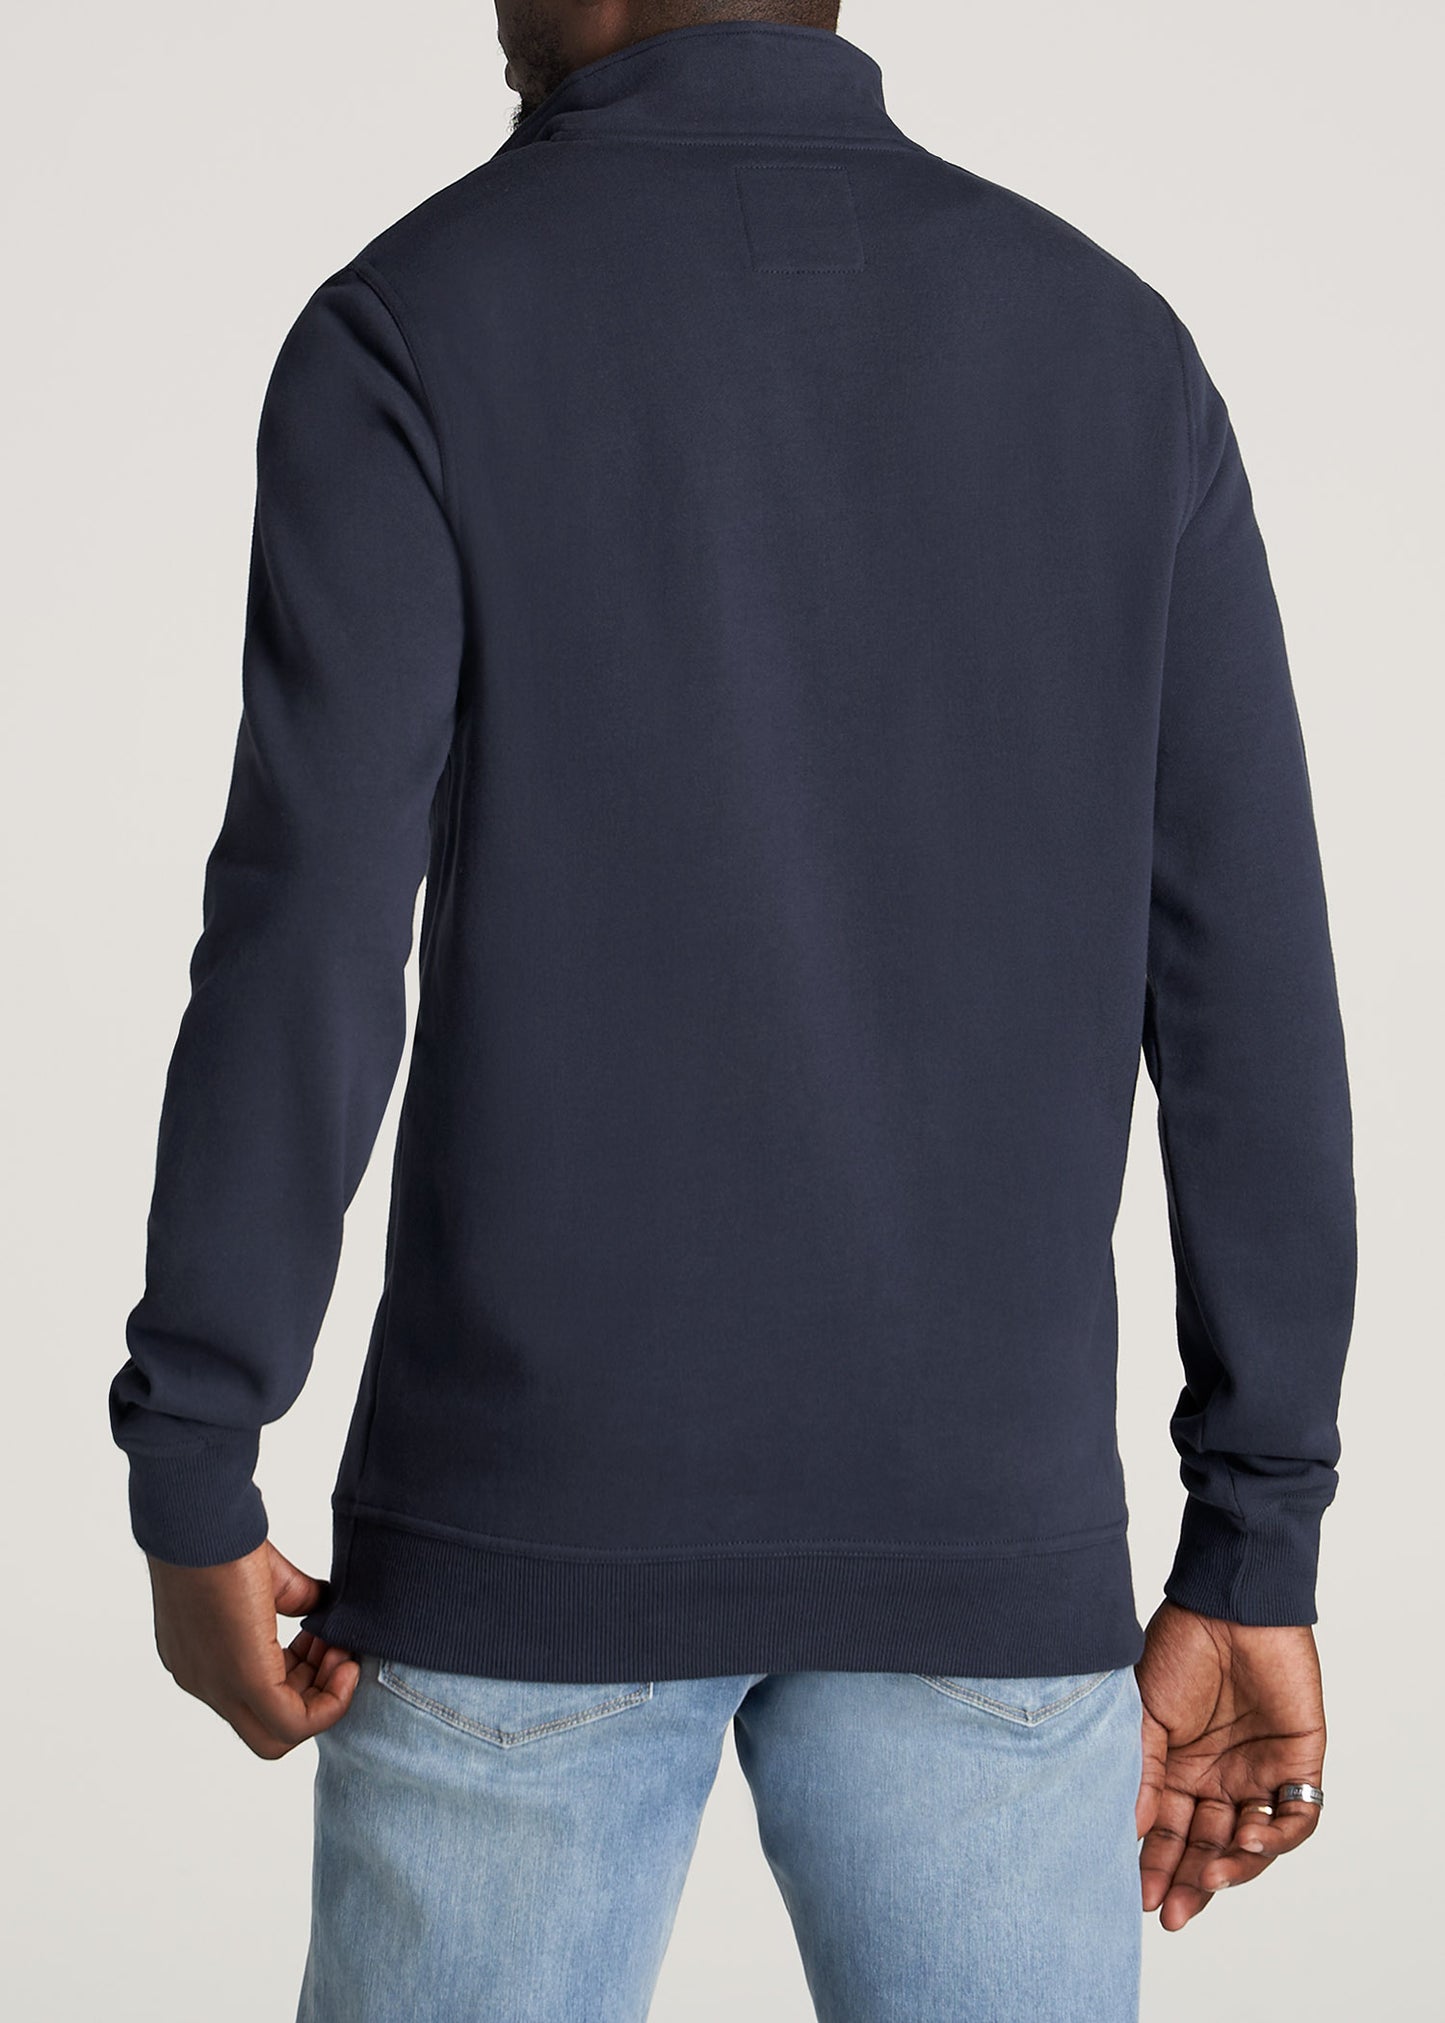    American-Tall-Men-Mens-8020-Fleece-1-4Zip-Sweatshirt-Navy-back